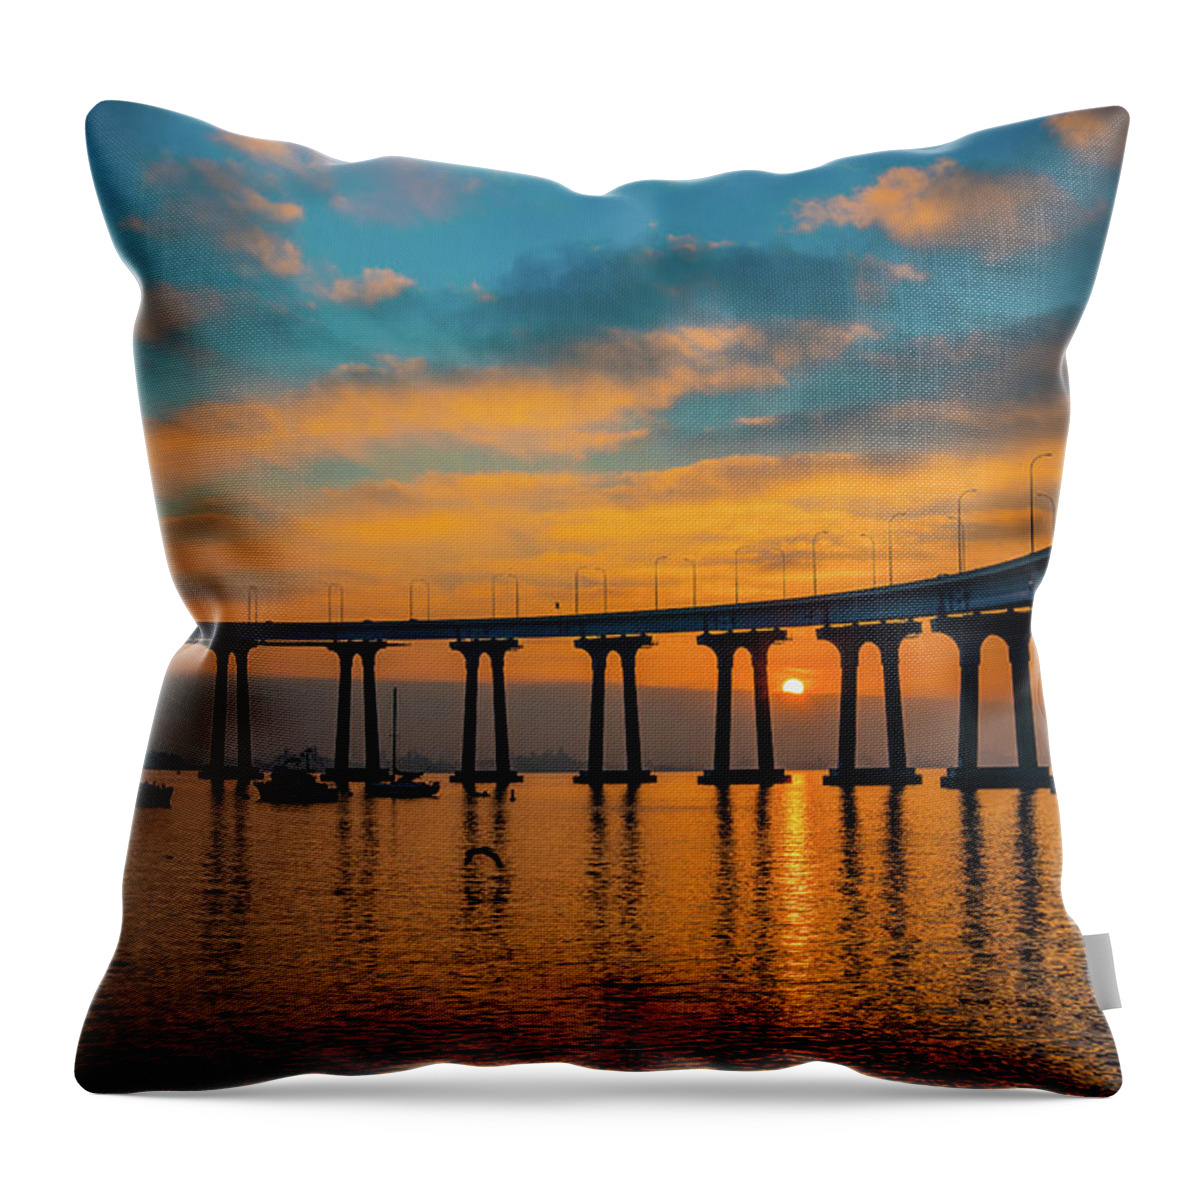 Coronado Throw Pillow featuring the photograph Coronado Sunrise by Local Snaps Photography